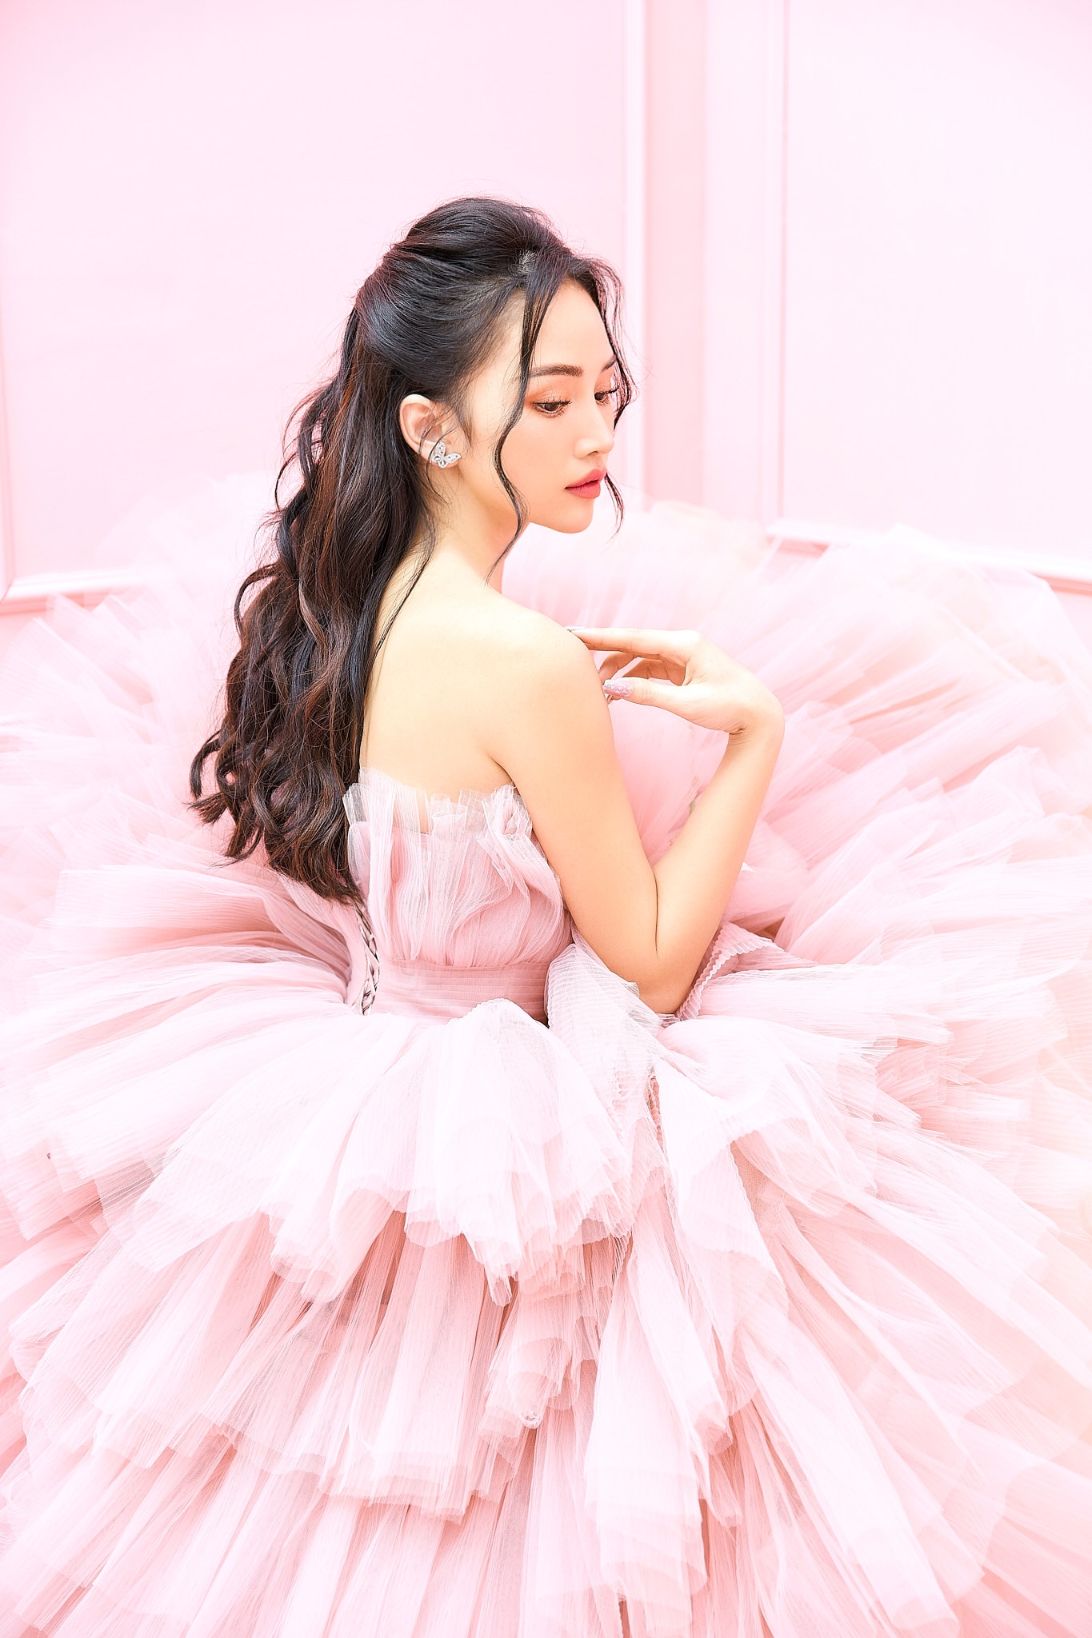 ha dan chi 2 Diễn viên, người mẫu Hà Đan Chi khiến fan bấn loạn bởi bộ hình mới đẹp như nàng thơ